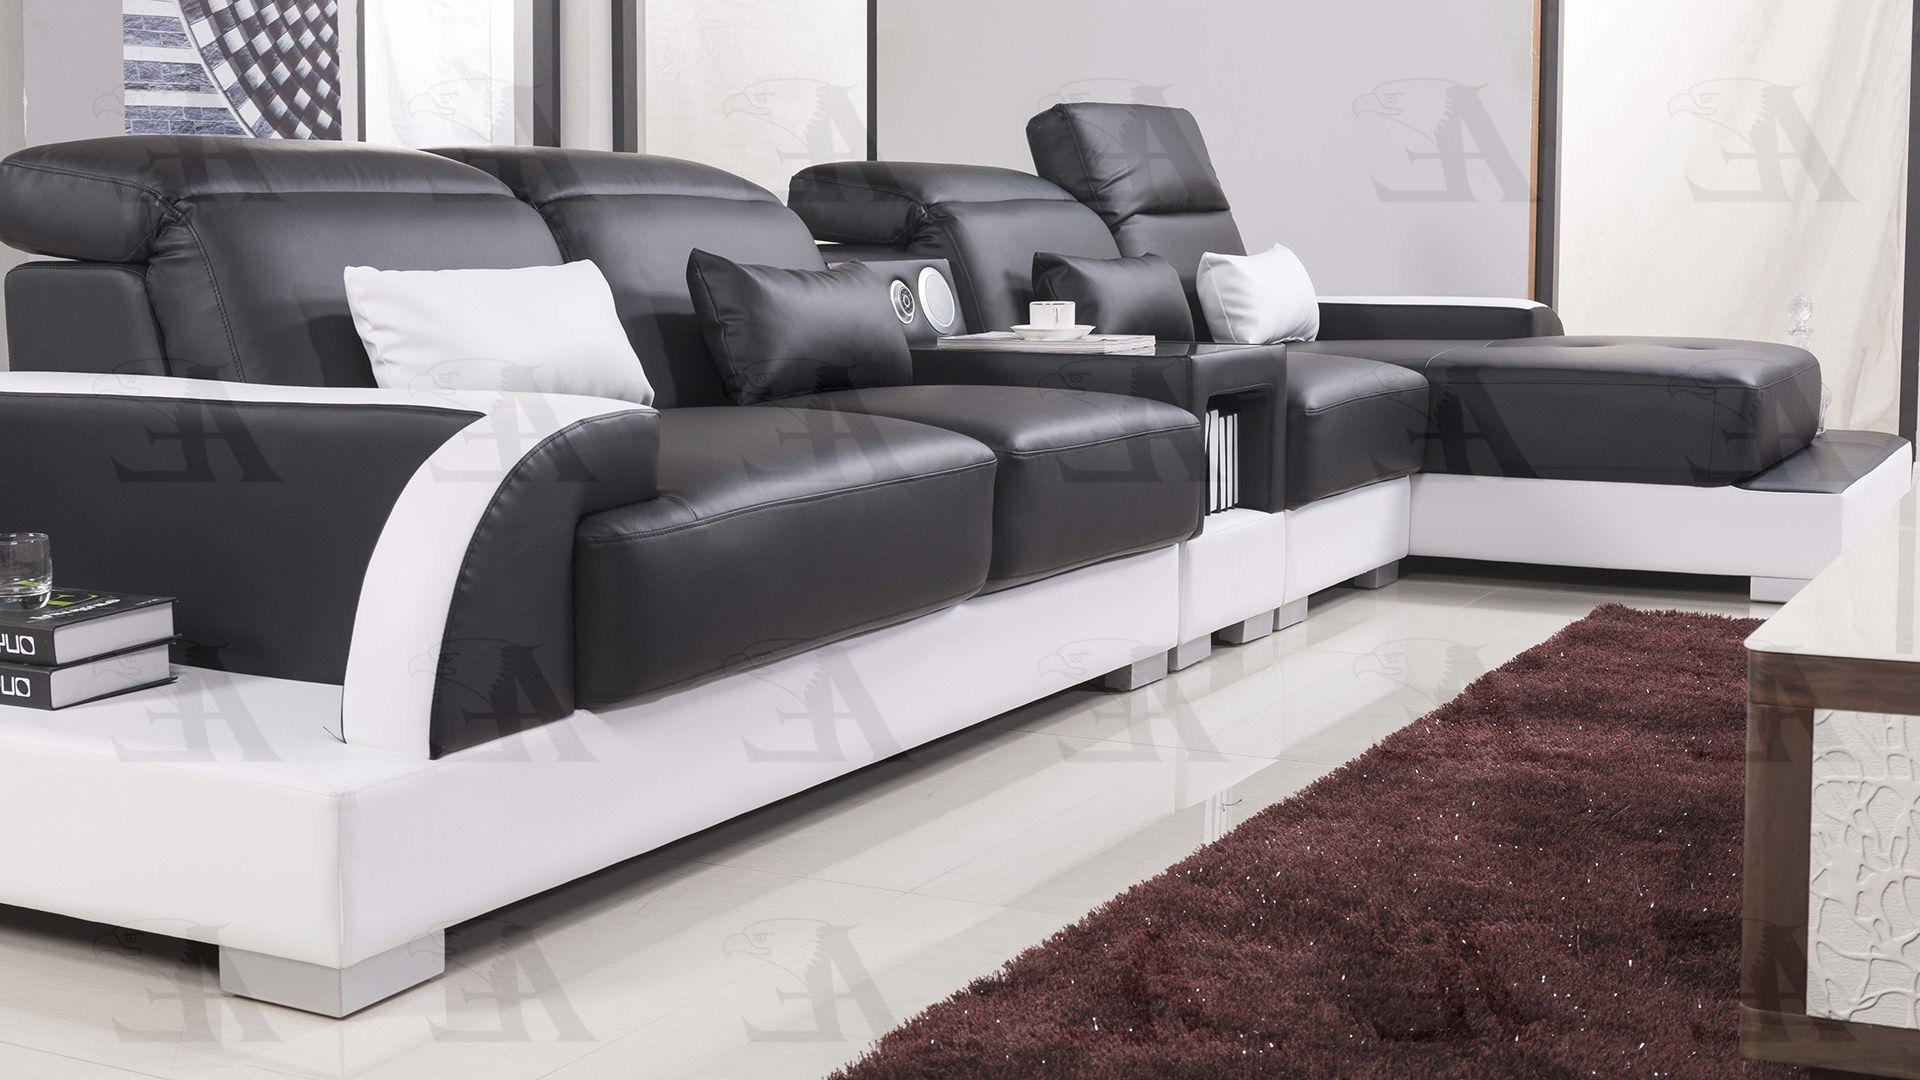 

    
American Eagle Furniture AE-LD812-BK.W Sectional Sofa White/Black AE-LD812R-BK.W
